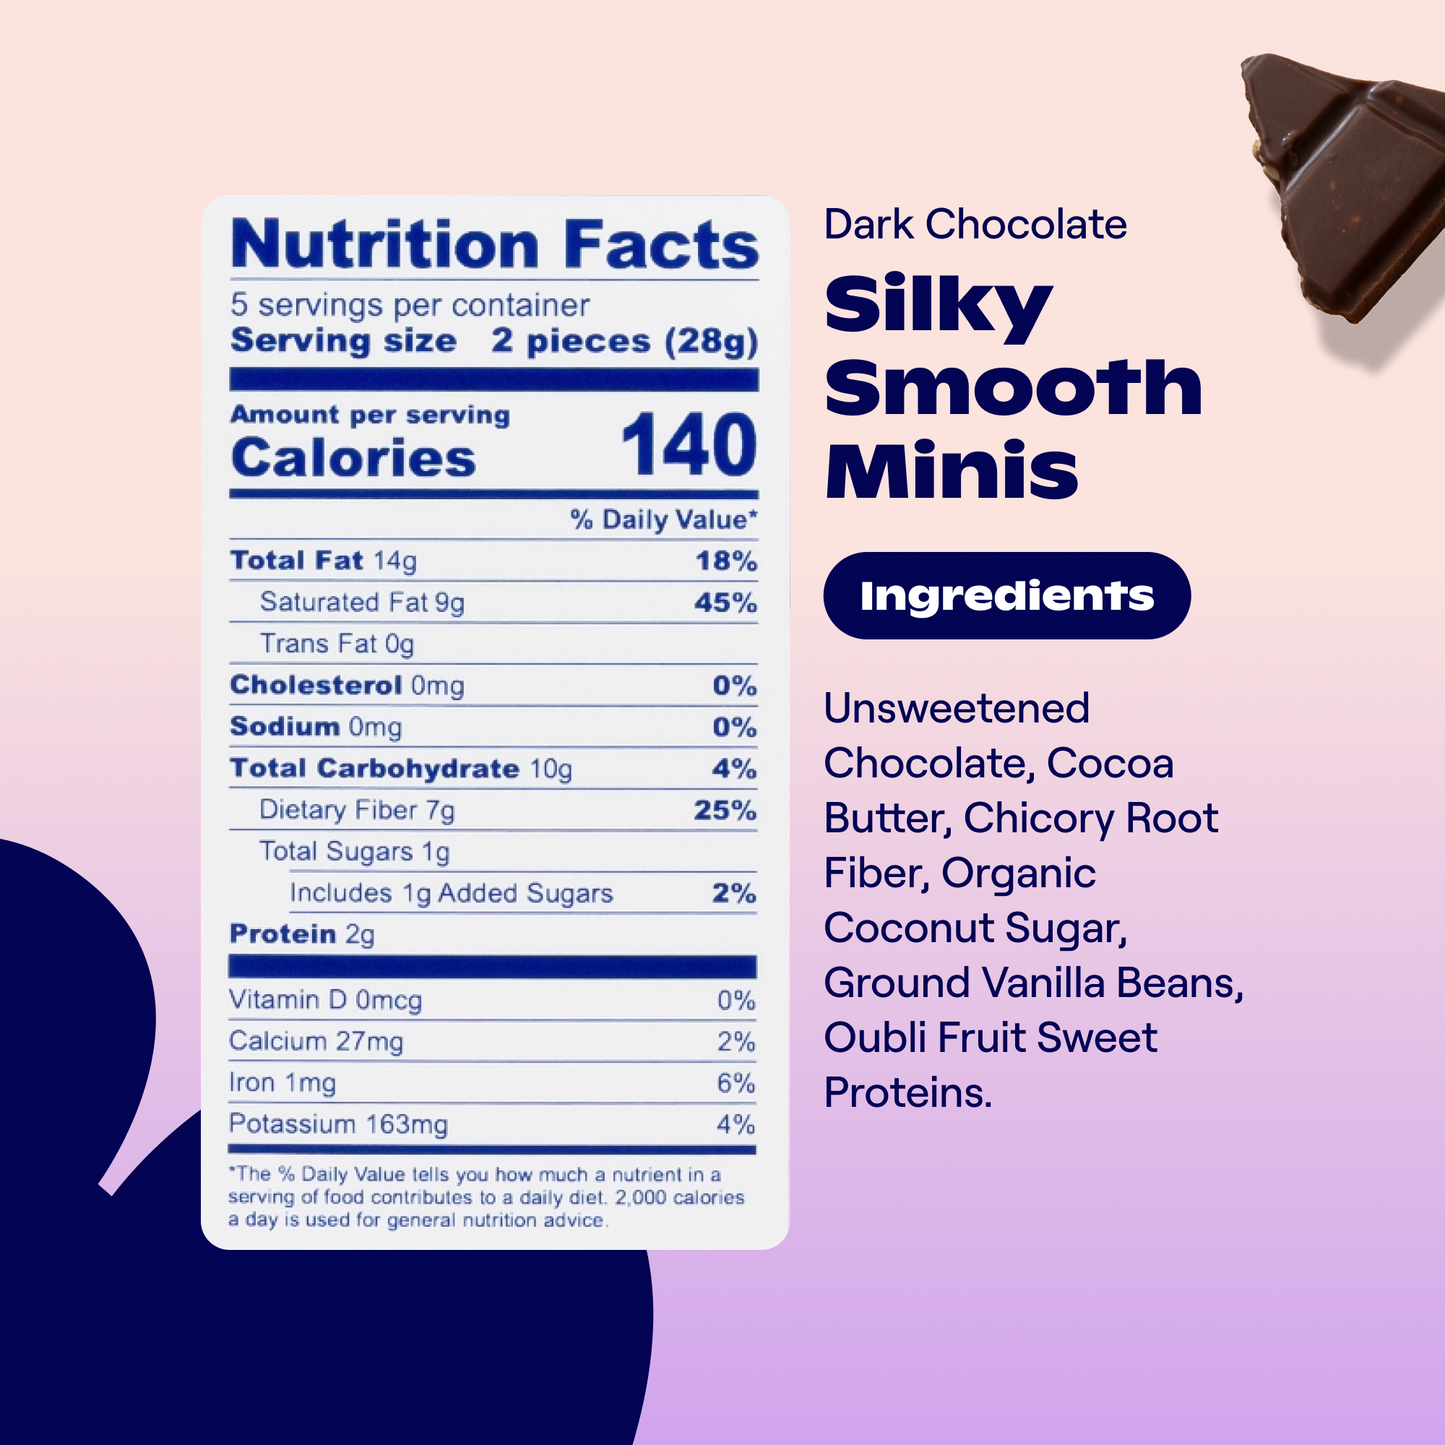 Dark Chocolate Silky Smooth Minis